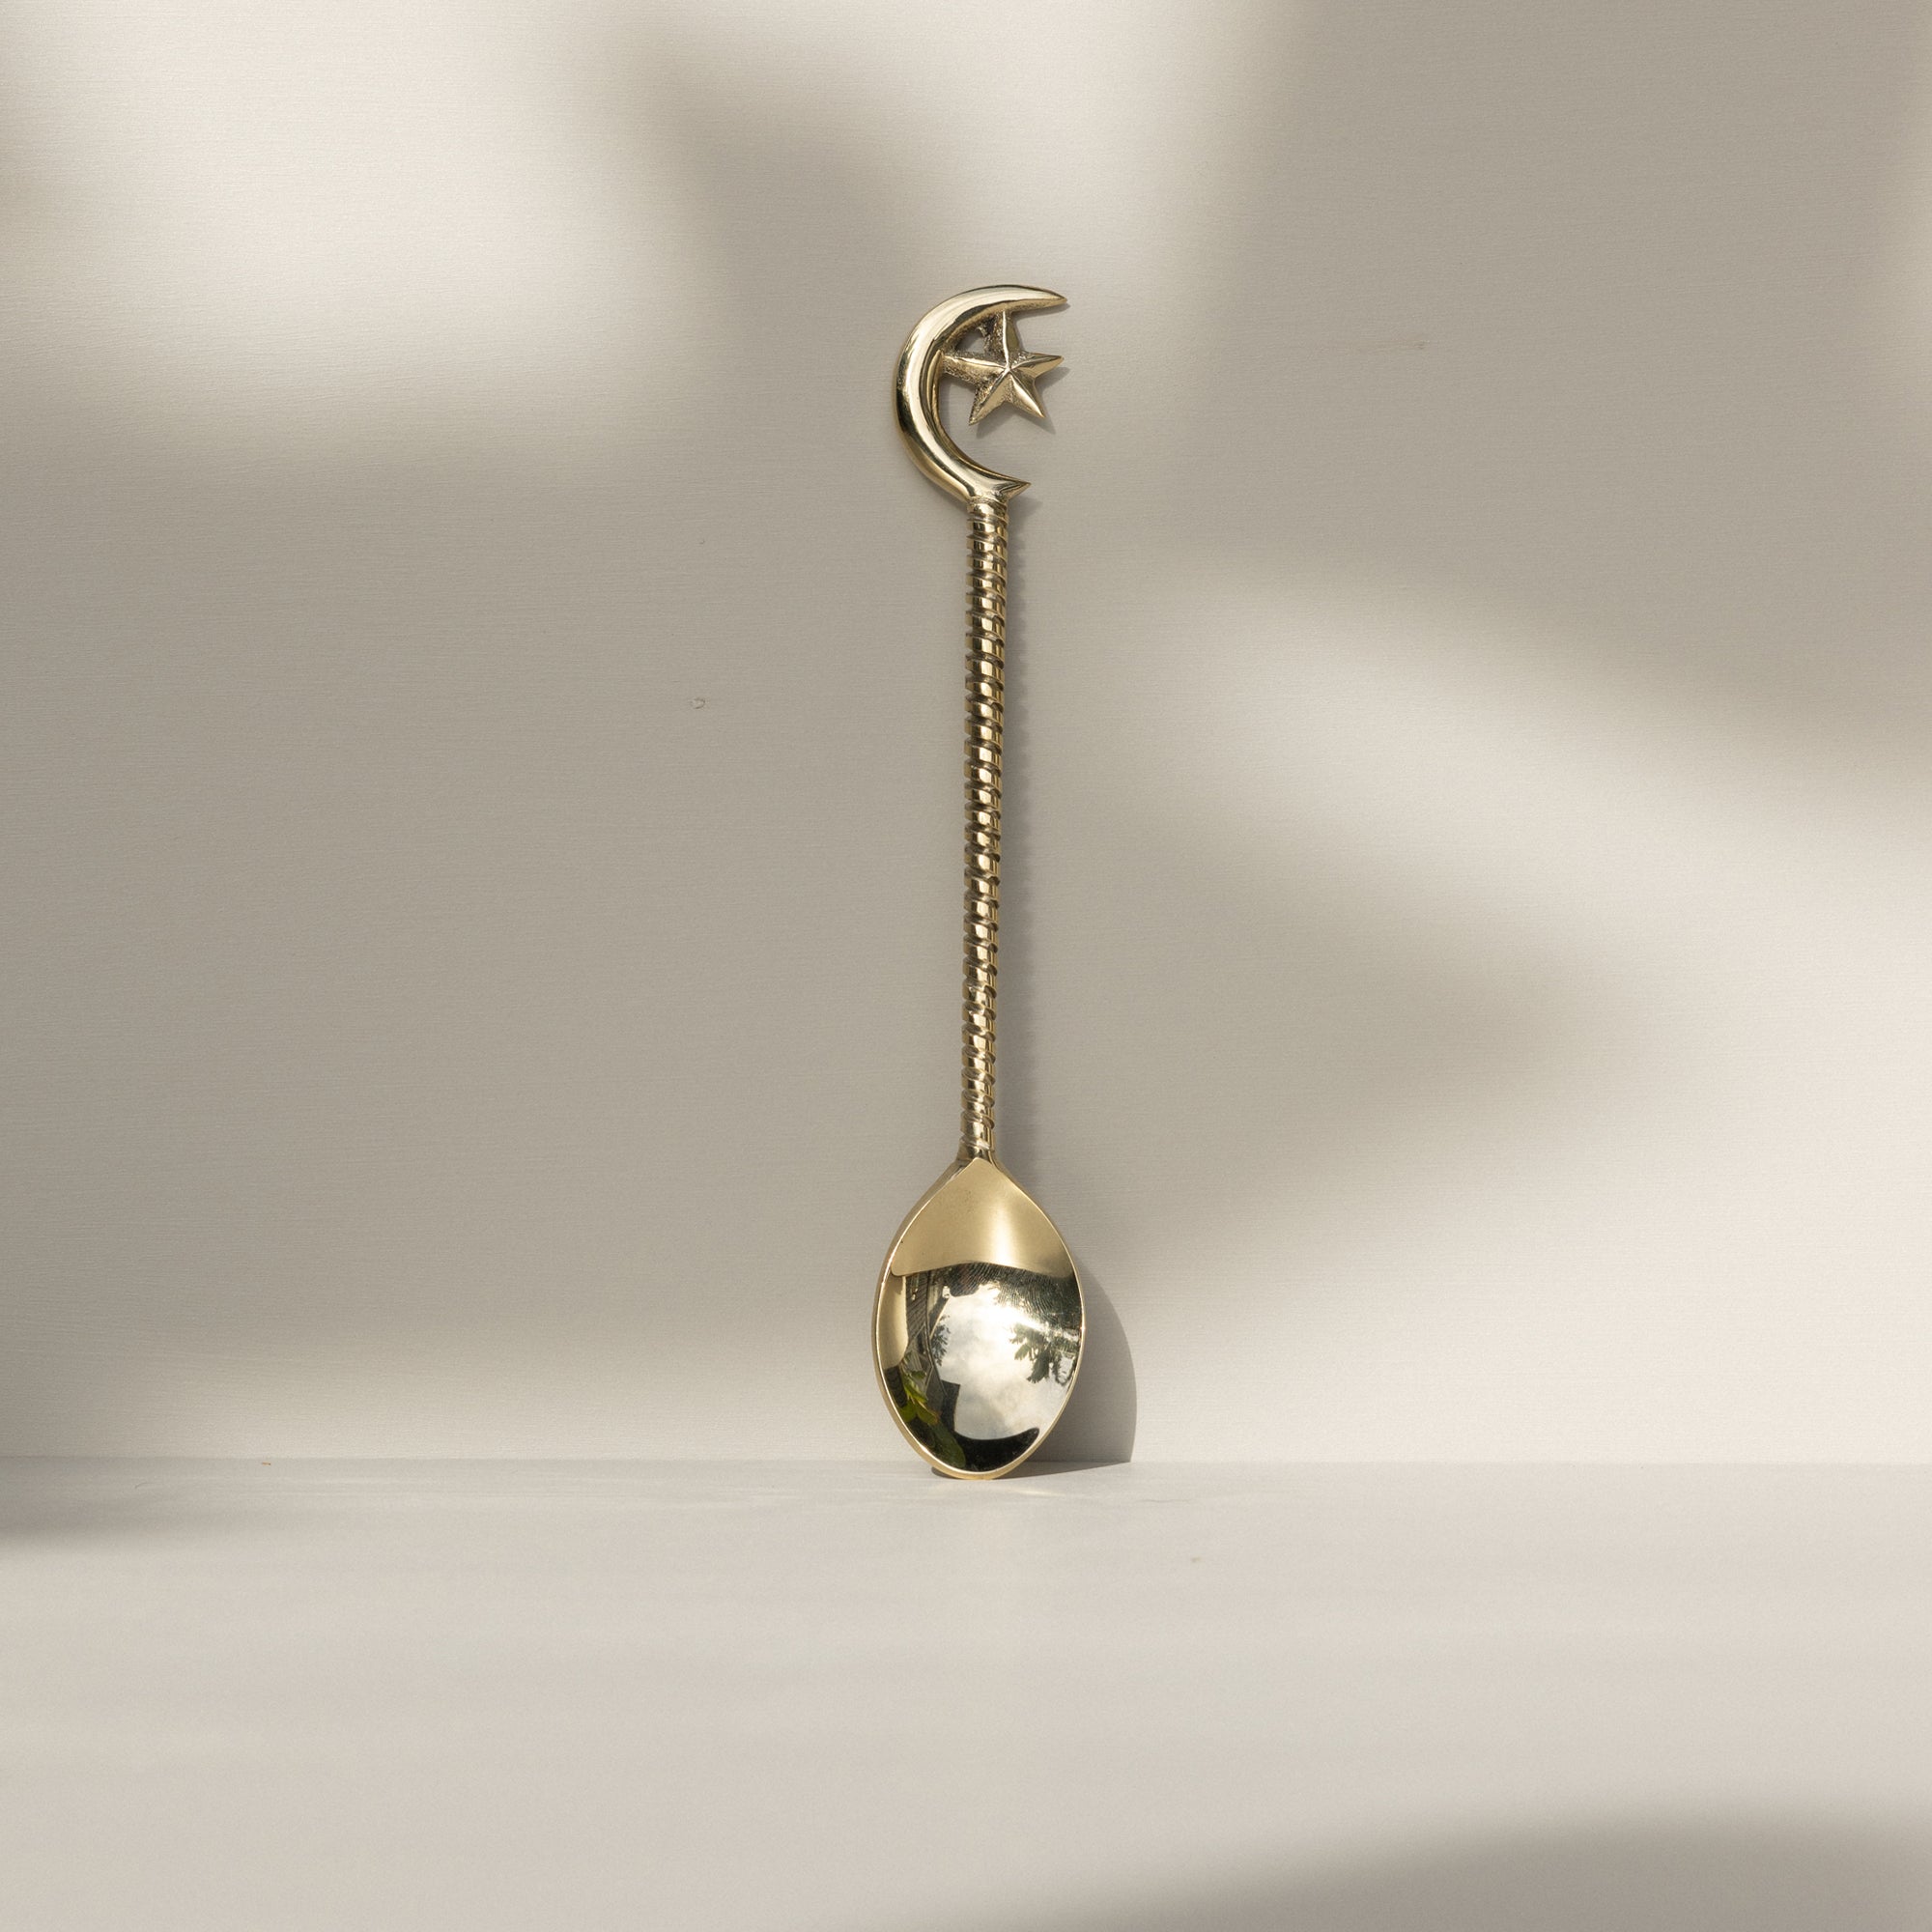 Moon Brass Spoon